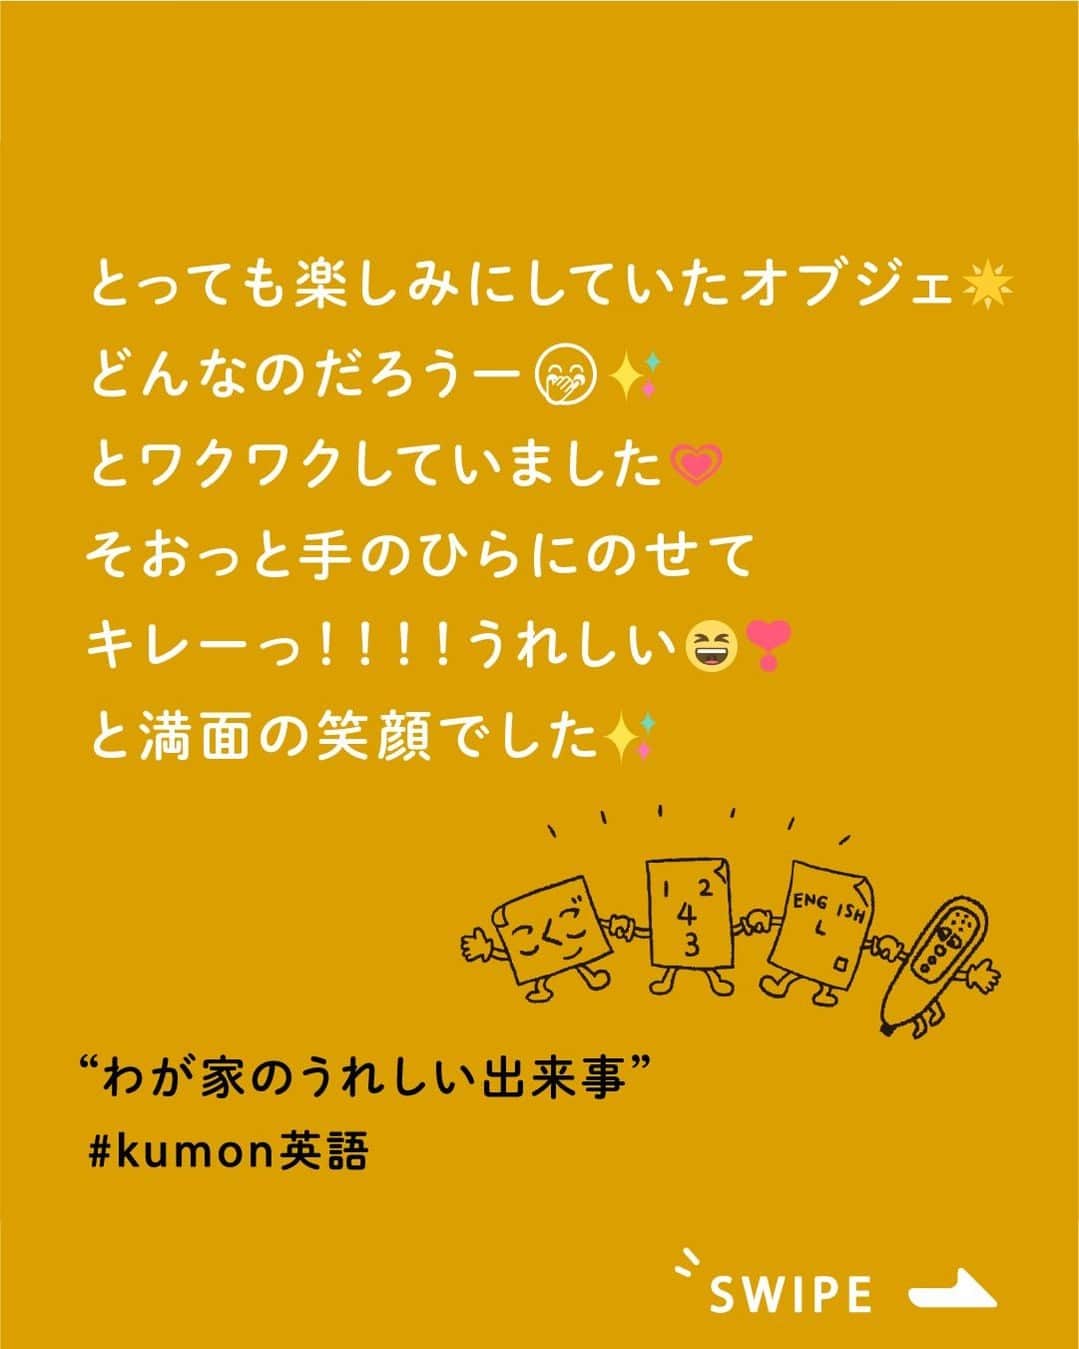 KUMON（公文式・くもん）【オフィシャル】のインスタグラム：「KUMONって国語や算数のイメージがあるけど、英語ってどうなの❔ そんな声にお応えして、今日はKUMONで英語を学習している方をご紹介します🤗  ▼1枚目　@7_ao.kumon さん - - - - - - - - - 宝物⚐⚑  1年間よくがんばりました🌷  とっても楽しみにしていたオブジェ🌟  箱を開ける時は、目をつぶって、 いいよって言ったら目をあけるからね！ どんなのだろうー🤭✨ とワクワクしていました💗  そおっと手のひらにのせて キレーっ！！！！うれしい😆❣️ と満面の笑顔でした✨  先に進めることだけがKUMONの良さ ではないけれど、努力が形として このように手元に残るのは 素敵なことだと思いました☺️  うれしそうな顔を見ることができて 私もうれしかったです🥰  今年もこのまま一緒にがんばろうね🌈 - - - - - - - - -  ▼2枚目　miri.tennis さん - - - - - - - - - 今年もKUMONのオブジェいただきました🥰 今年で2回目🎉 KUMONの先生には年中からお世話になっており、 感謝しかないです🙏 KUMONのお陰で今があると言っても過言ではないです。 - - - - - - - - -  素敵なご投稿ありがとうございました！✨ 日々の学習の成果としてもらえたオブジェが、更に励みになっているようですね♪  ただいま11月無料体験学習 受付中 実施期間：11月１日（水）～11月30日（木）  この機会に体験してみませんか？ 詳しくはハイライト「11月無料体験学習受付中」をチェック♪  ───────────  できた、たのしい、KUMONの毎日♪ KUMON公式アカウントでは、「 #kumonfriends 」のハッシュタグを付けてくださった投稿をご紹介しています📷 みなさんも、ぜひ投稿してみてくださいね😊  ※投稿写真は、公式Instagramアカウントの投稿やKUMON BUZZ PLACE WEBサイトにてトリミング、加工の上、使用させていただく場合がございます。 ※画像や動画の無断転載はお断りします。 ※ダイレクトメッセージへの返信はいたしません。  #くもん #くもんいくもん #やっててよかった公文式 #公文 #公文式 #くもん頑張り隊 #くもんの宿題 #公文英語 #英語 #えいご #子ども英語 #学習習慣 #学習 #学力向上 #子育てママ #子育て日記 #成長記録 #家庭学習 #家庭教育 #高進度学習者賞 #小学生 #習い事 #宿題 #子どものいる暮らし #子どもと暮らす #kumon #kumonkids #kumontime #くもんママと繋がりたい」